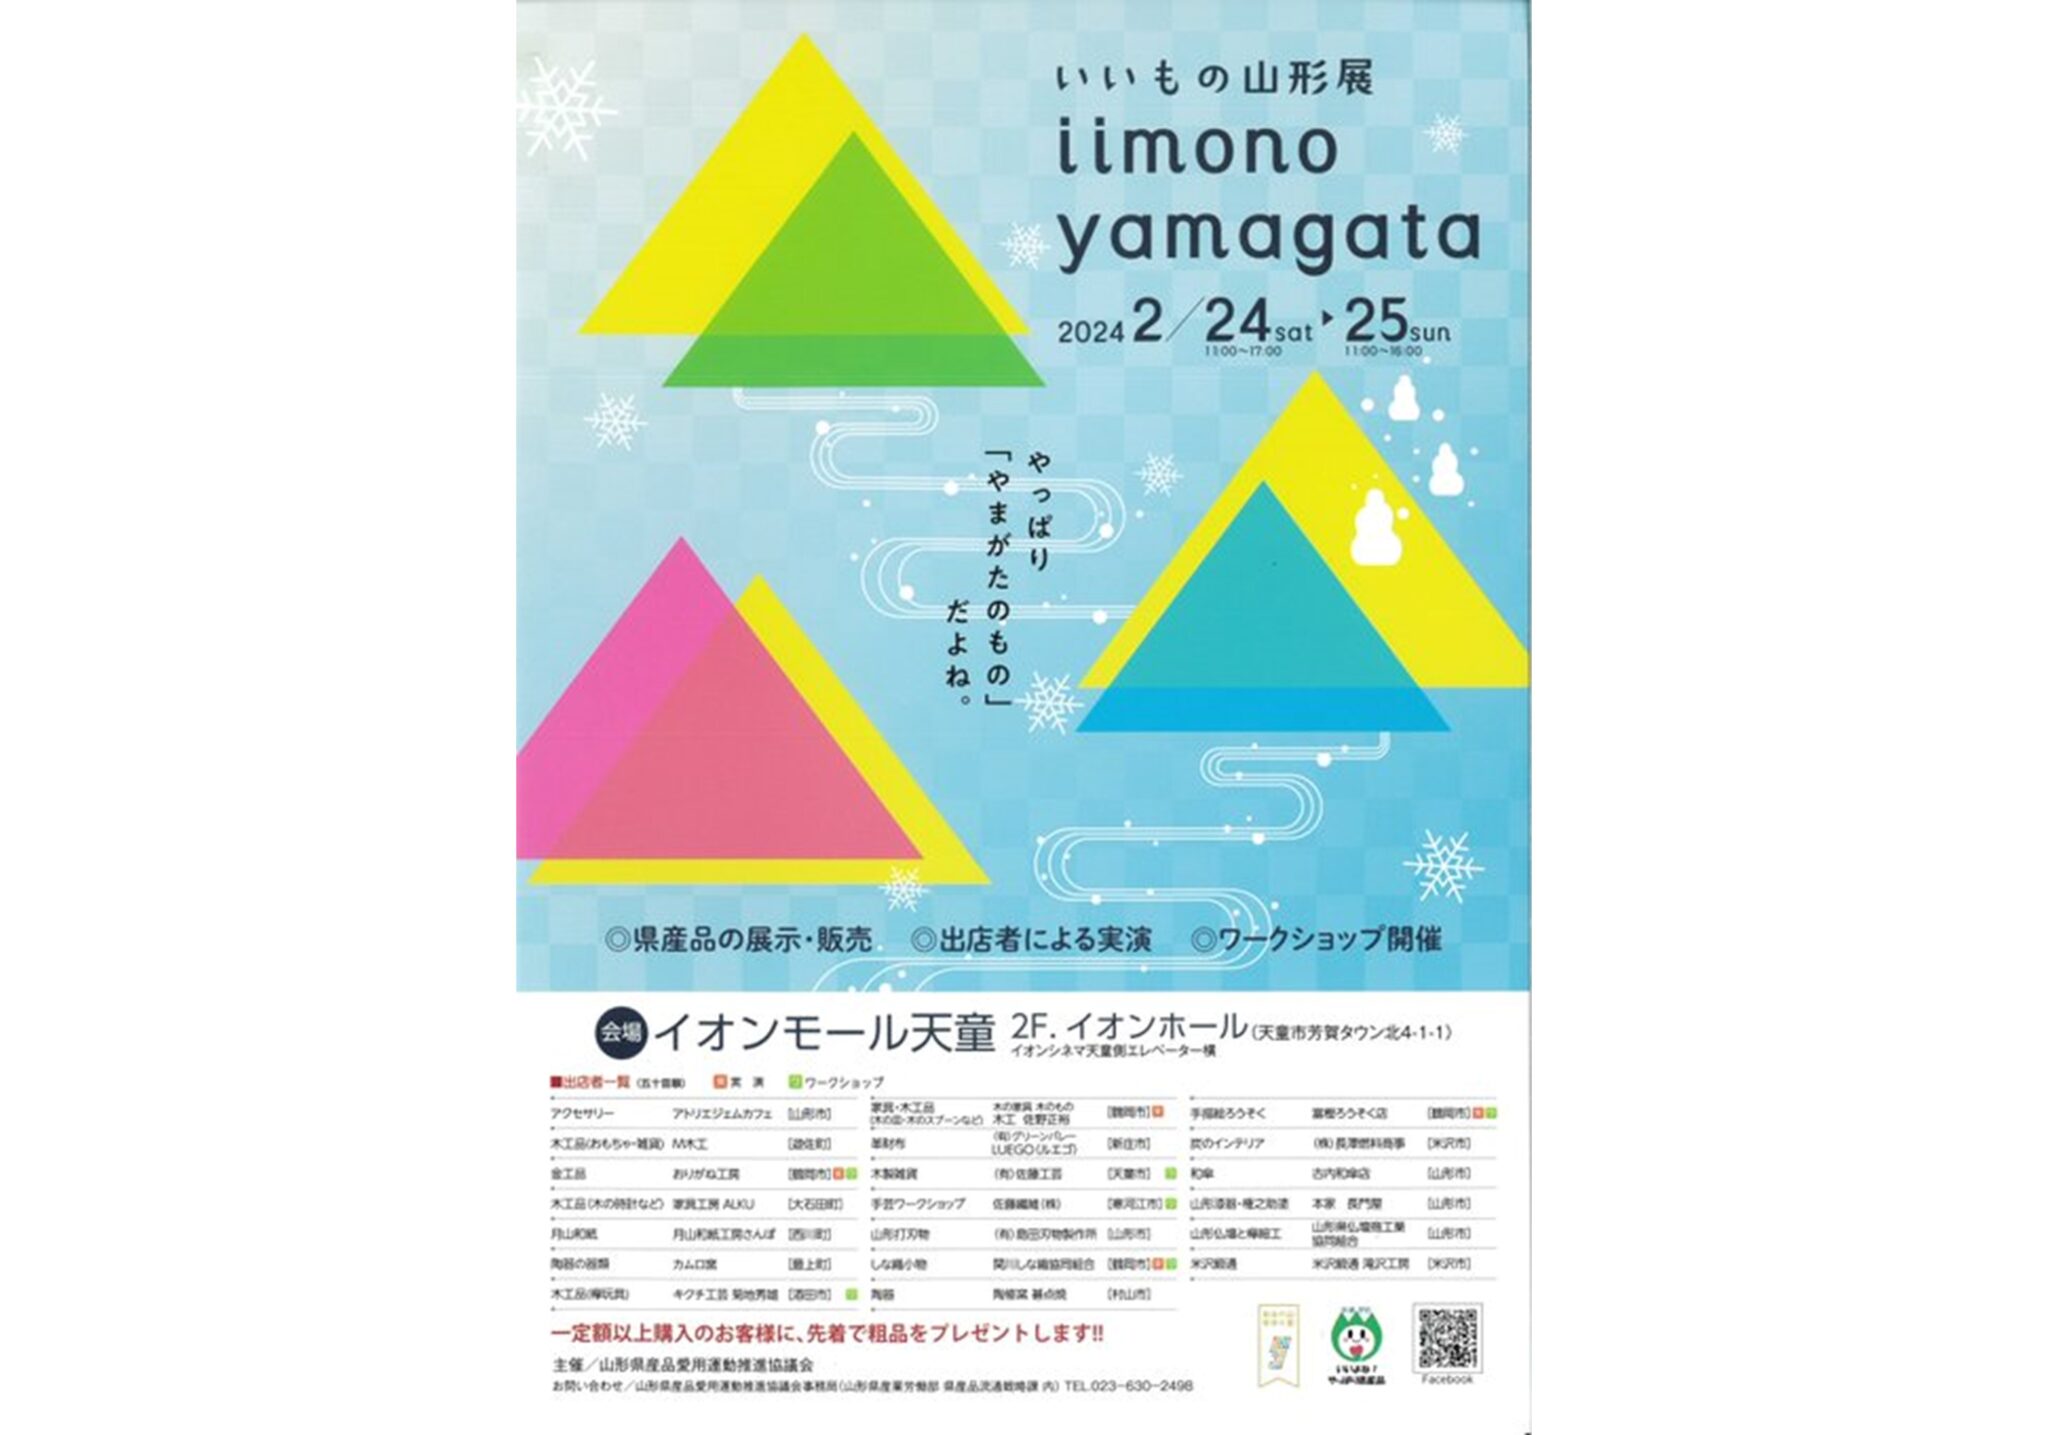 いいもの山形展 (iimono yamagata）